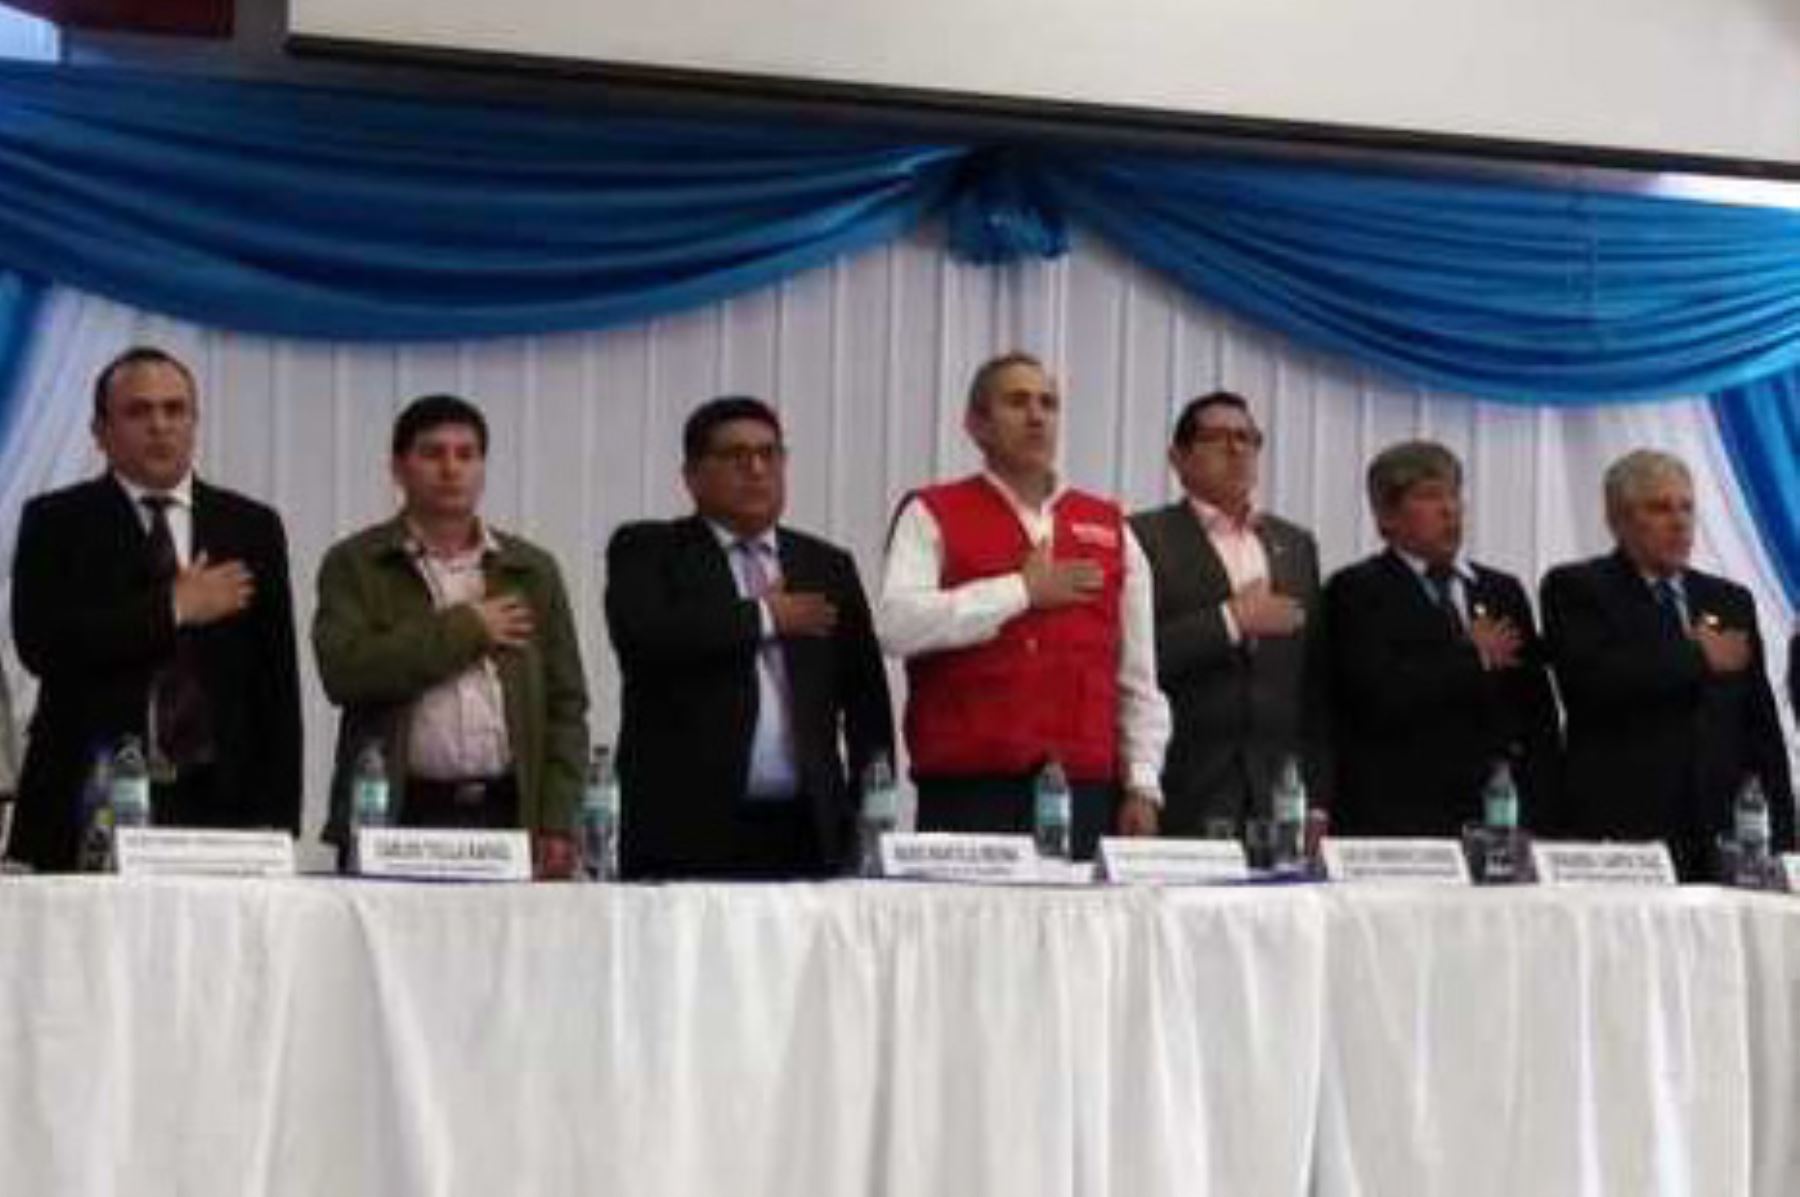 Viceministro de Transportes, Carlos Estremadoyro,participó en audiencia descentralizada, en Moquegua.